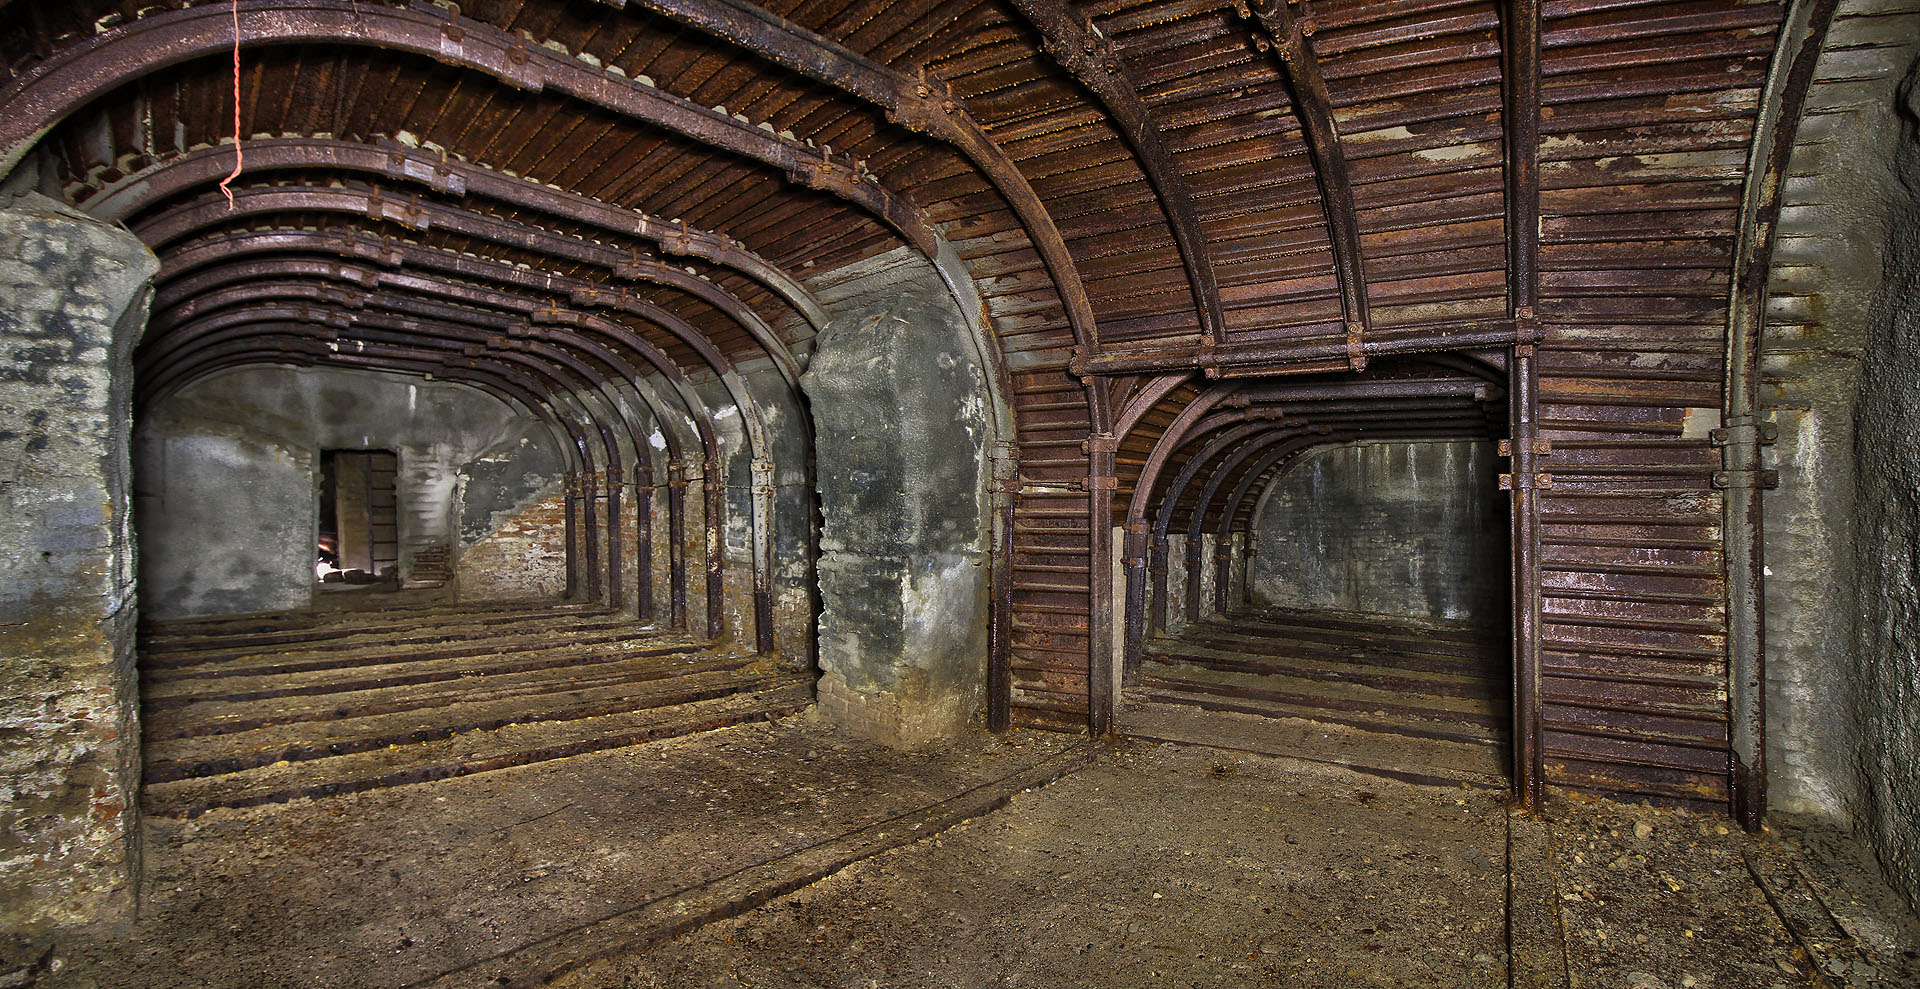 Podzemní prostory vyktzují zajímavou symetrii. Z obou sálů vybíhají na konci v pravém úhlu ještě menší obdélníkové místnosti.